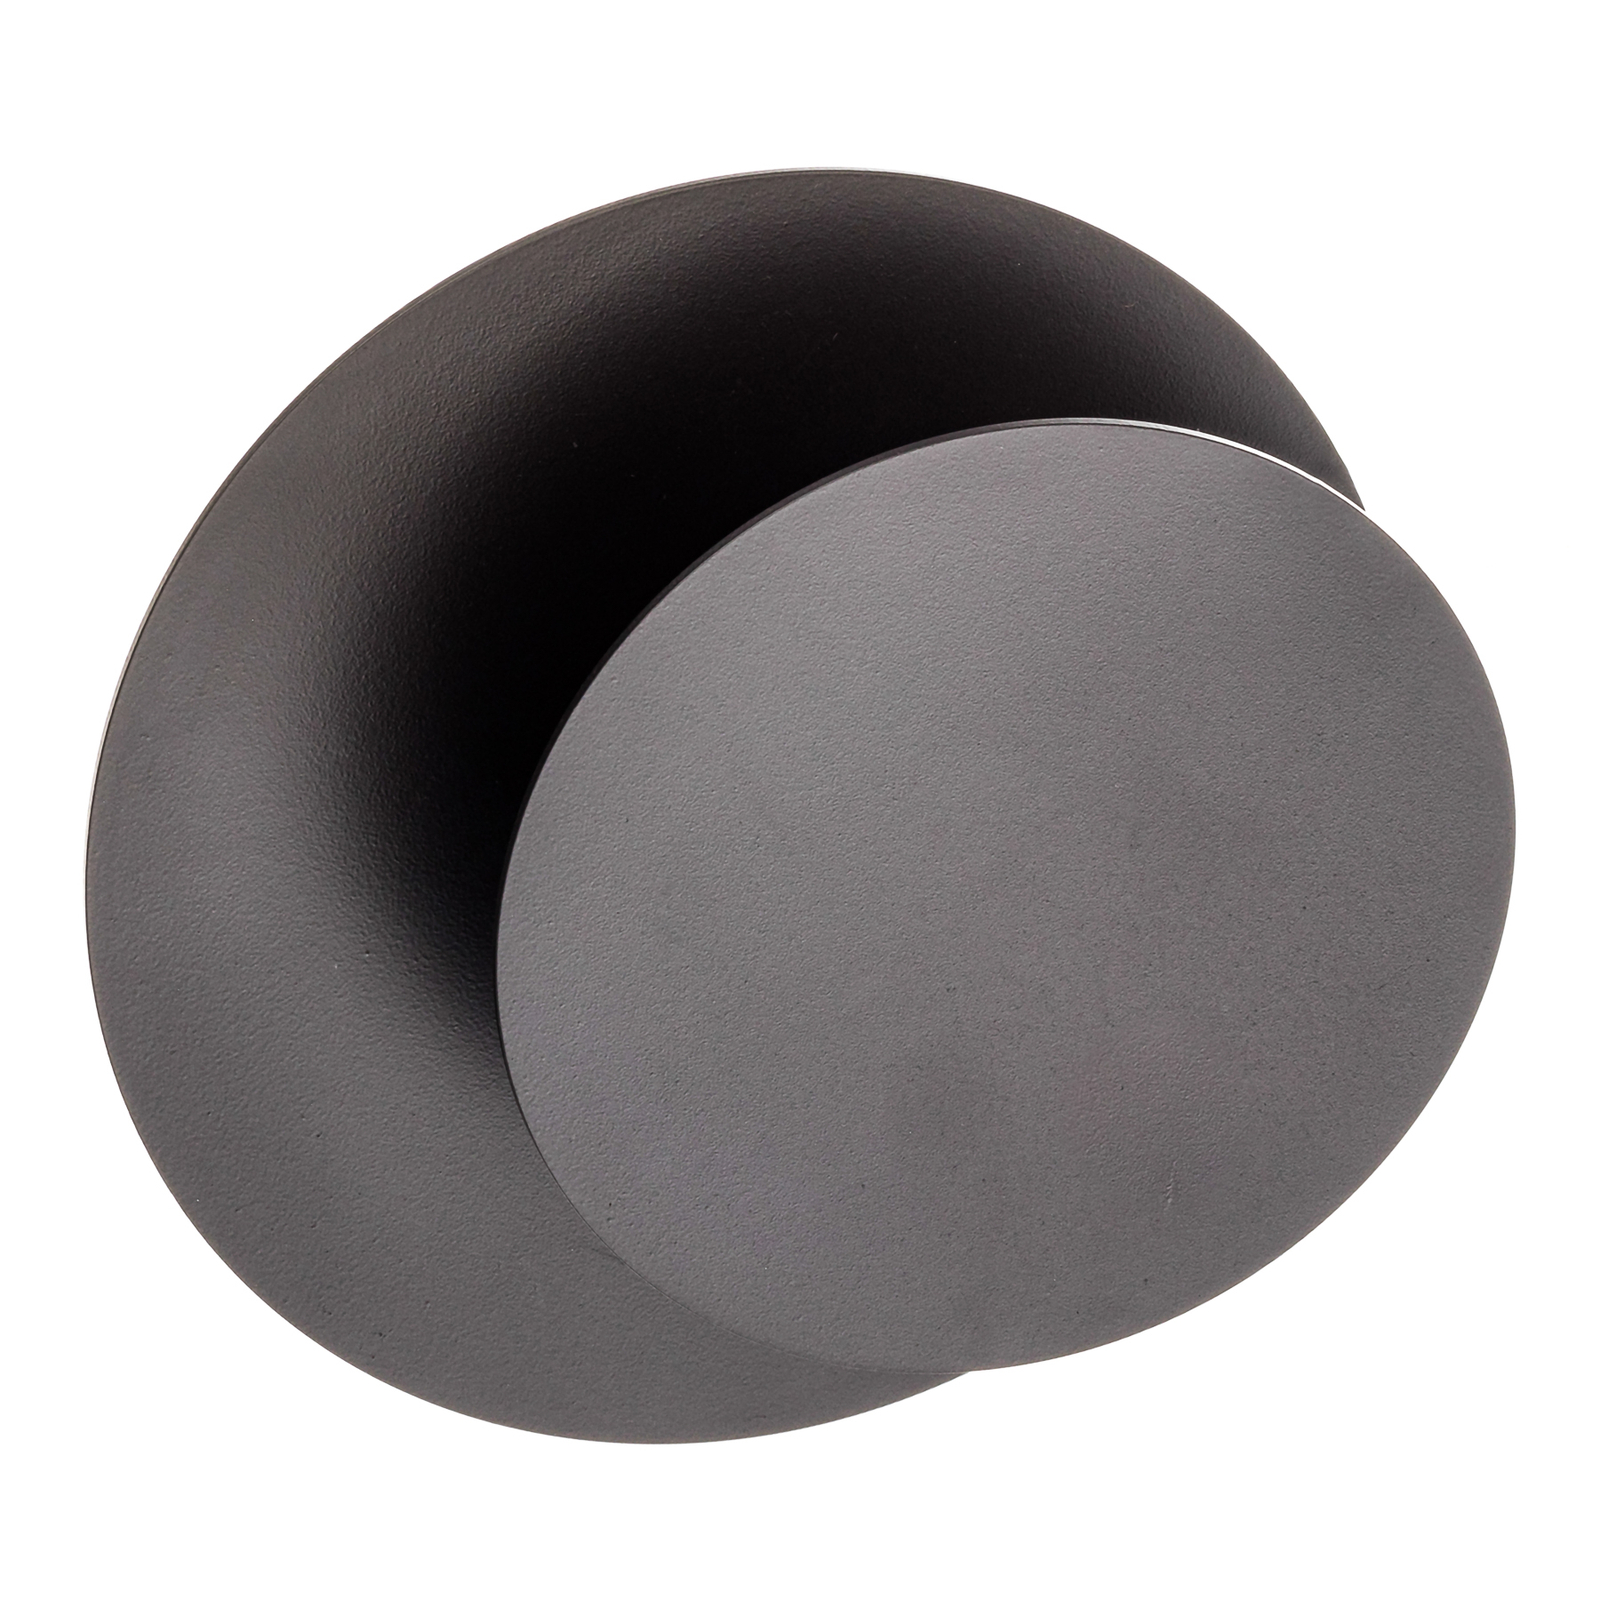 Wandlamp Cirle in ronde vorm, zwart